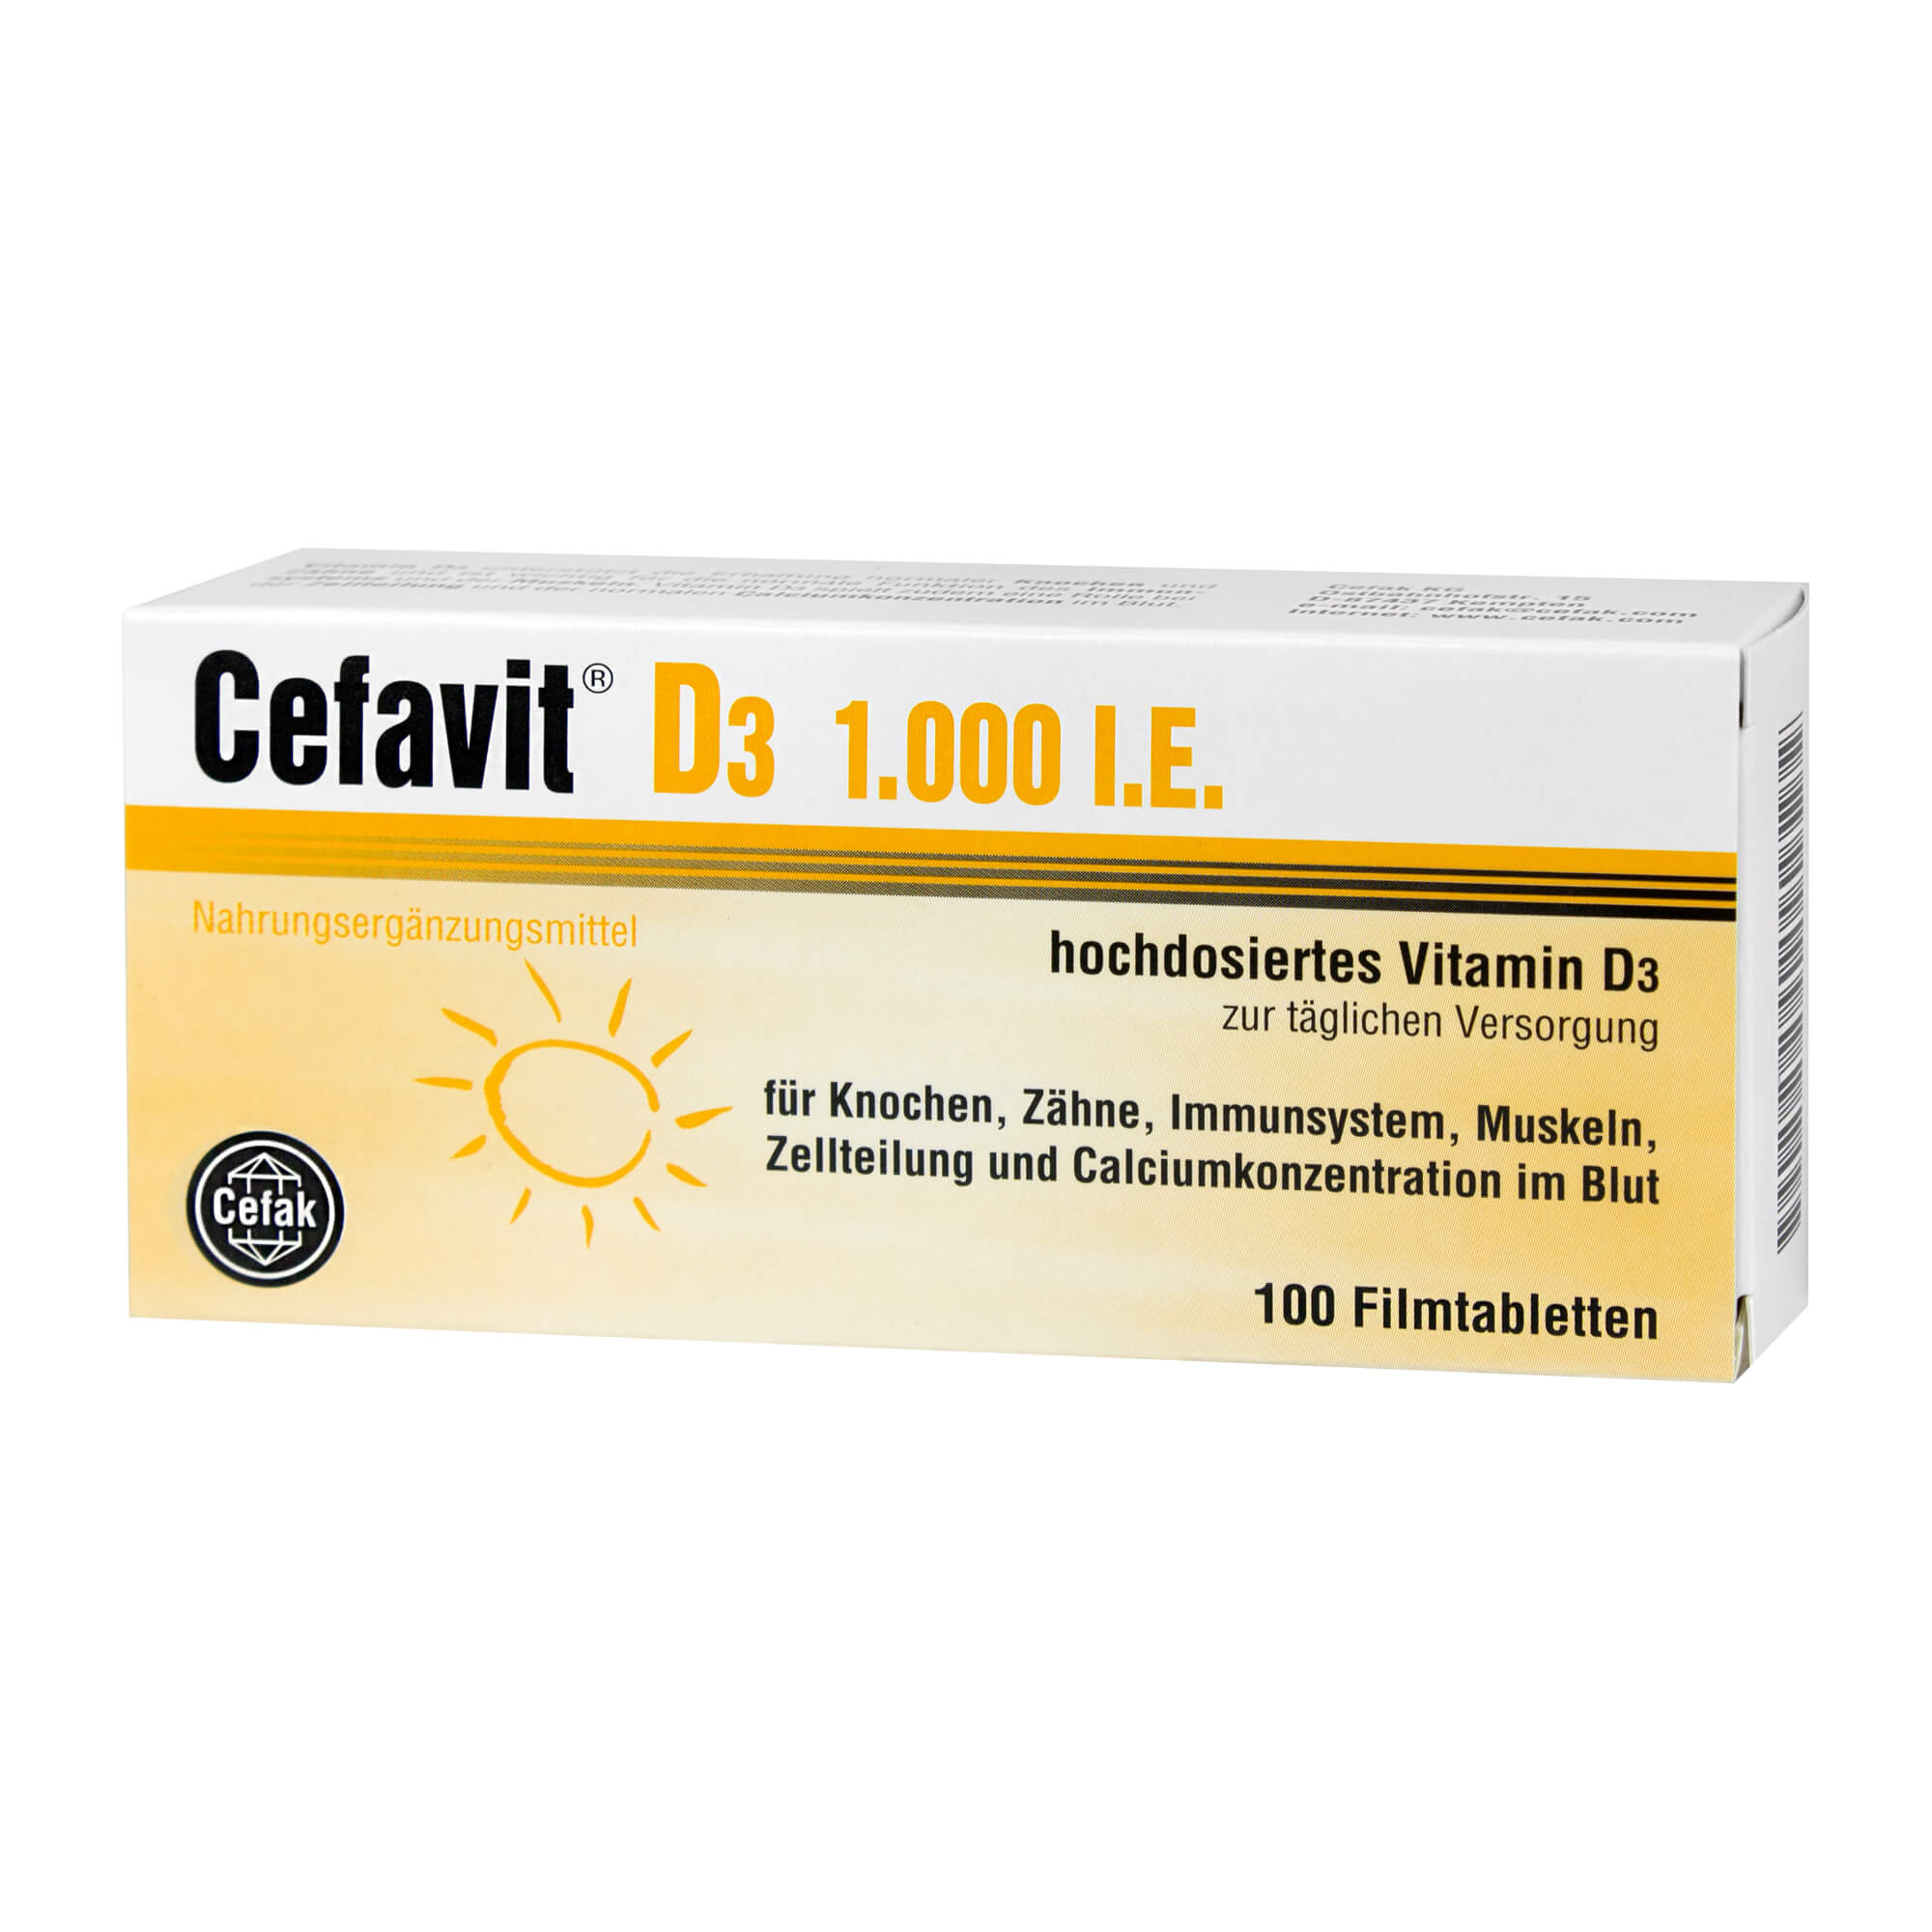 Nahrungsergänzungsmittel mit hochdosiertem Vitamin D3 zur täglichen Versorgung.